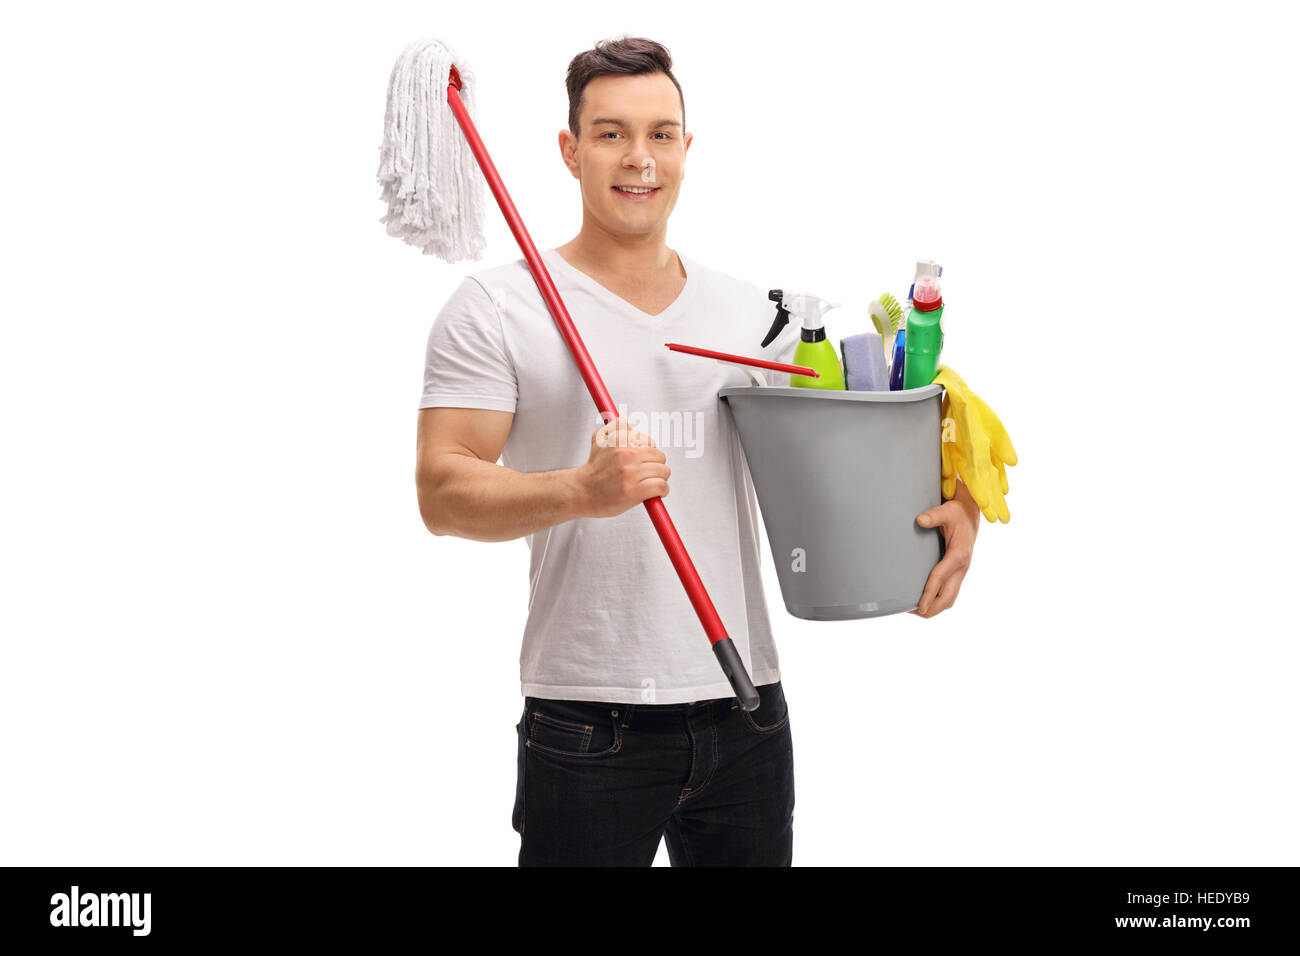 Giovane uomo tenendo un secchio pieno di prodotti per la pulizia e la radazza isolati su sfondo bianco Foto Stock